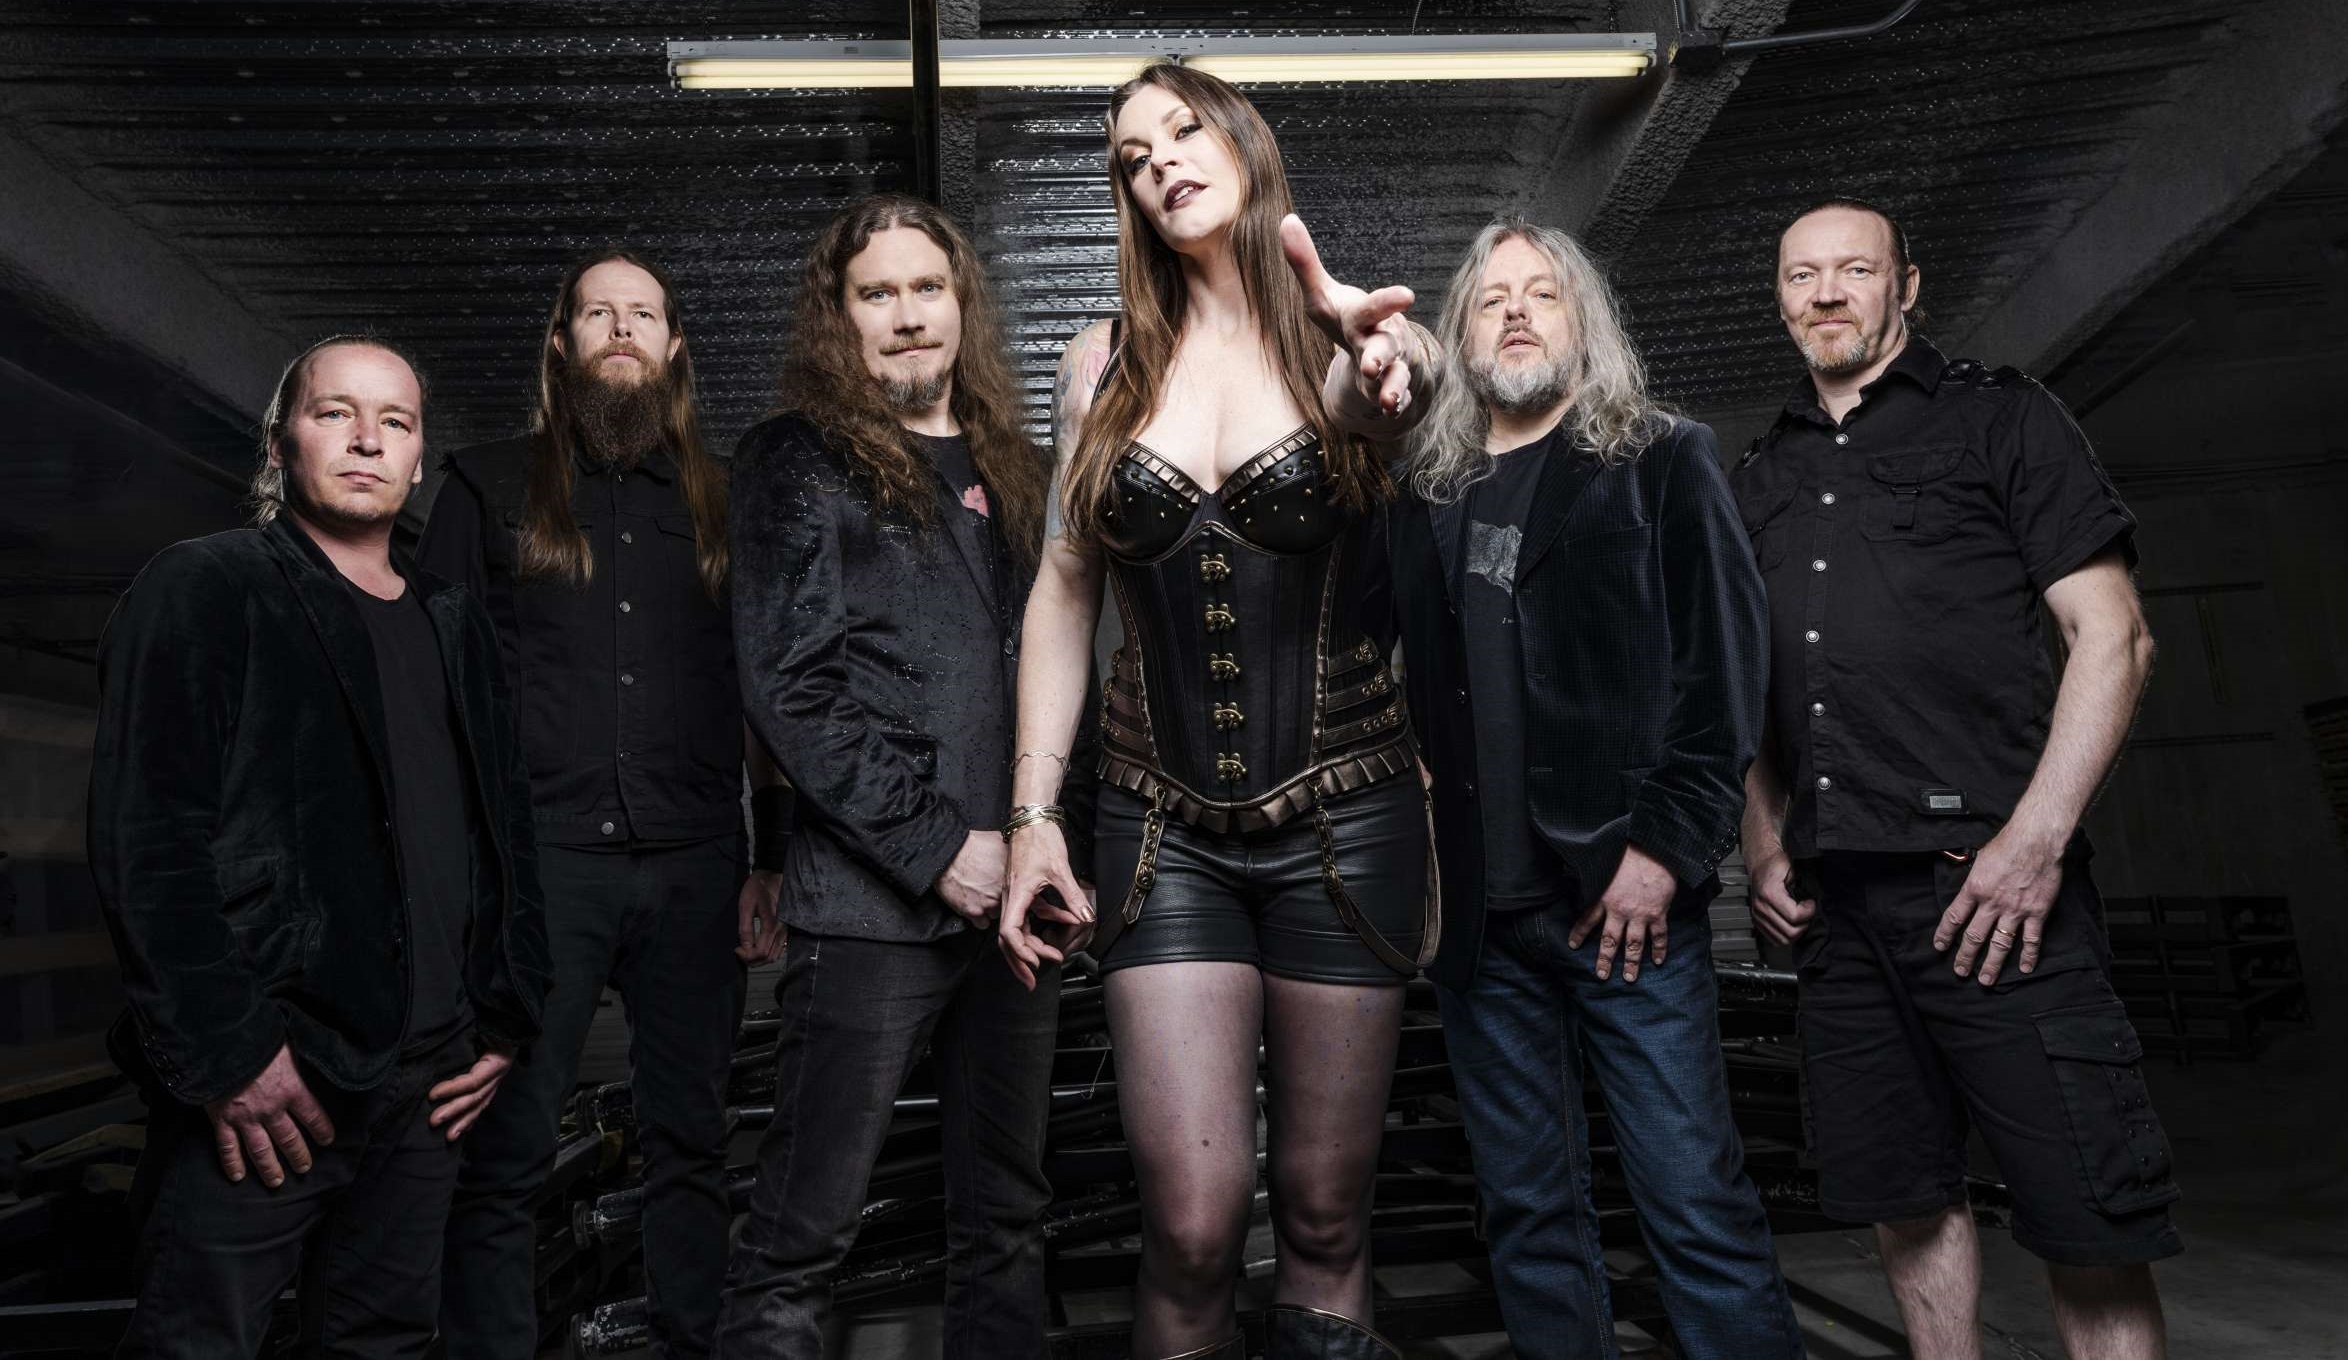 Óriási meglepetést ígér a Nightwish új lemeze!